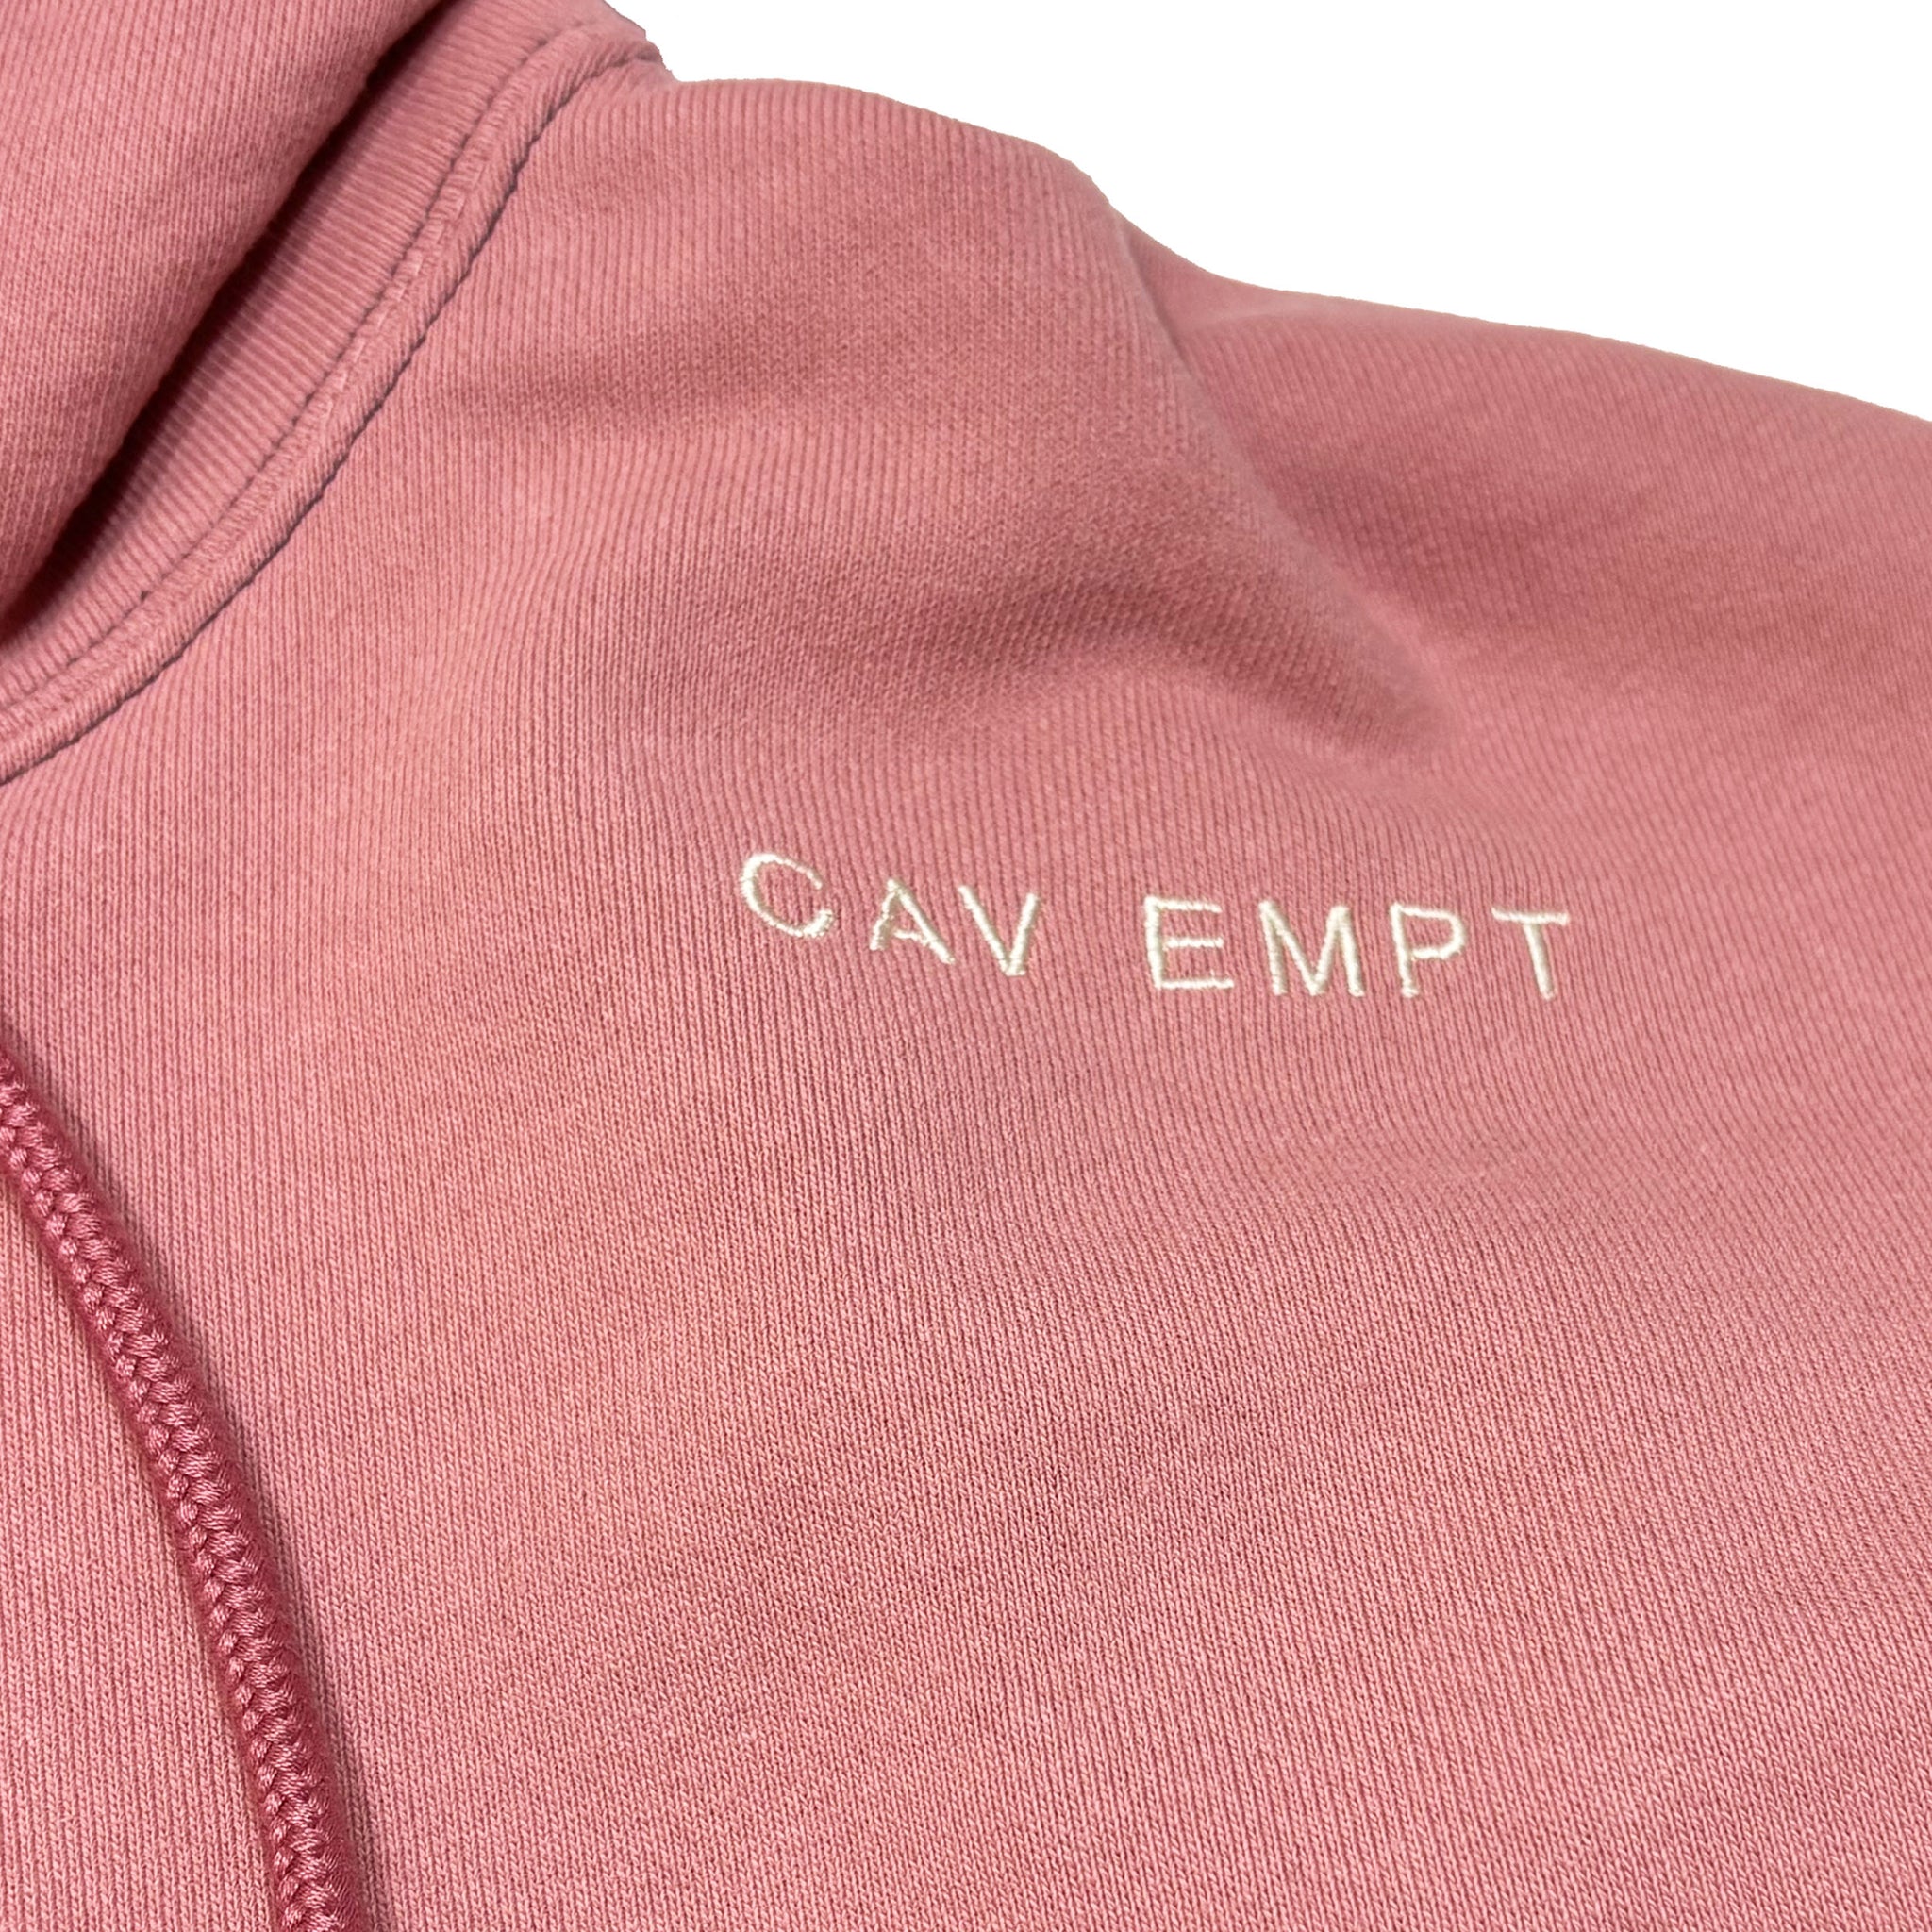 Cav Empt Solid Heavy Hoody #2 Pink